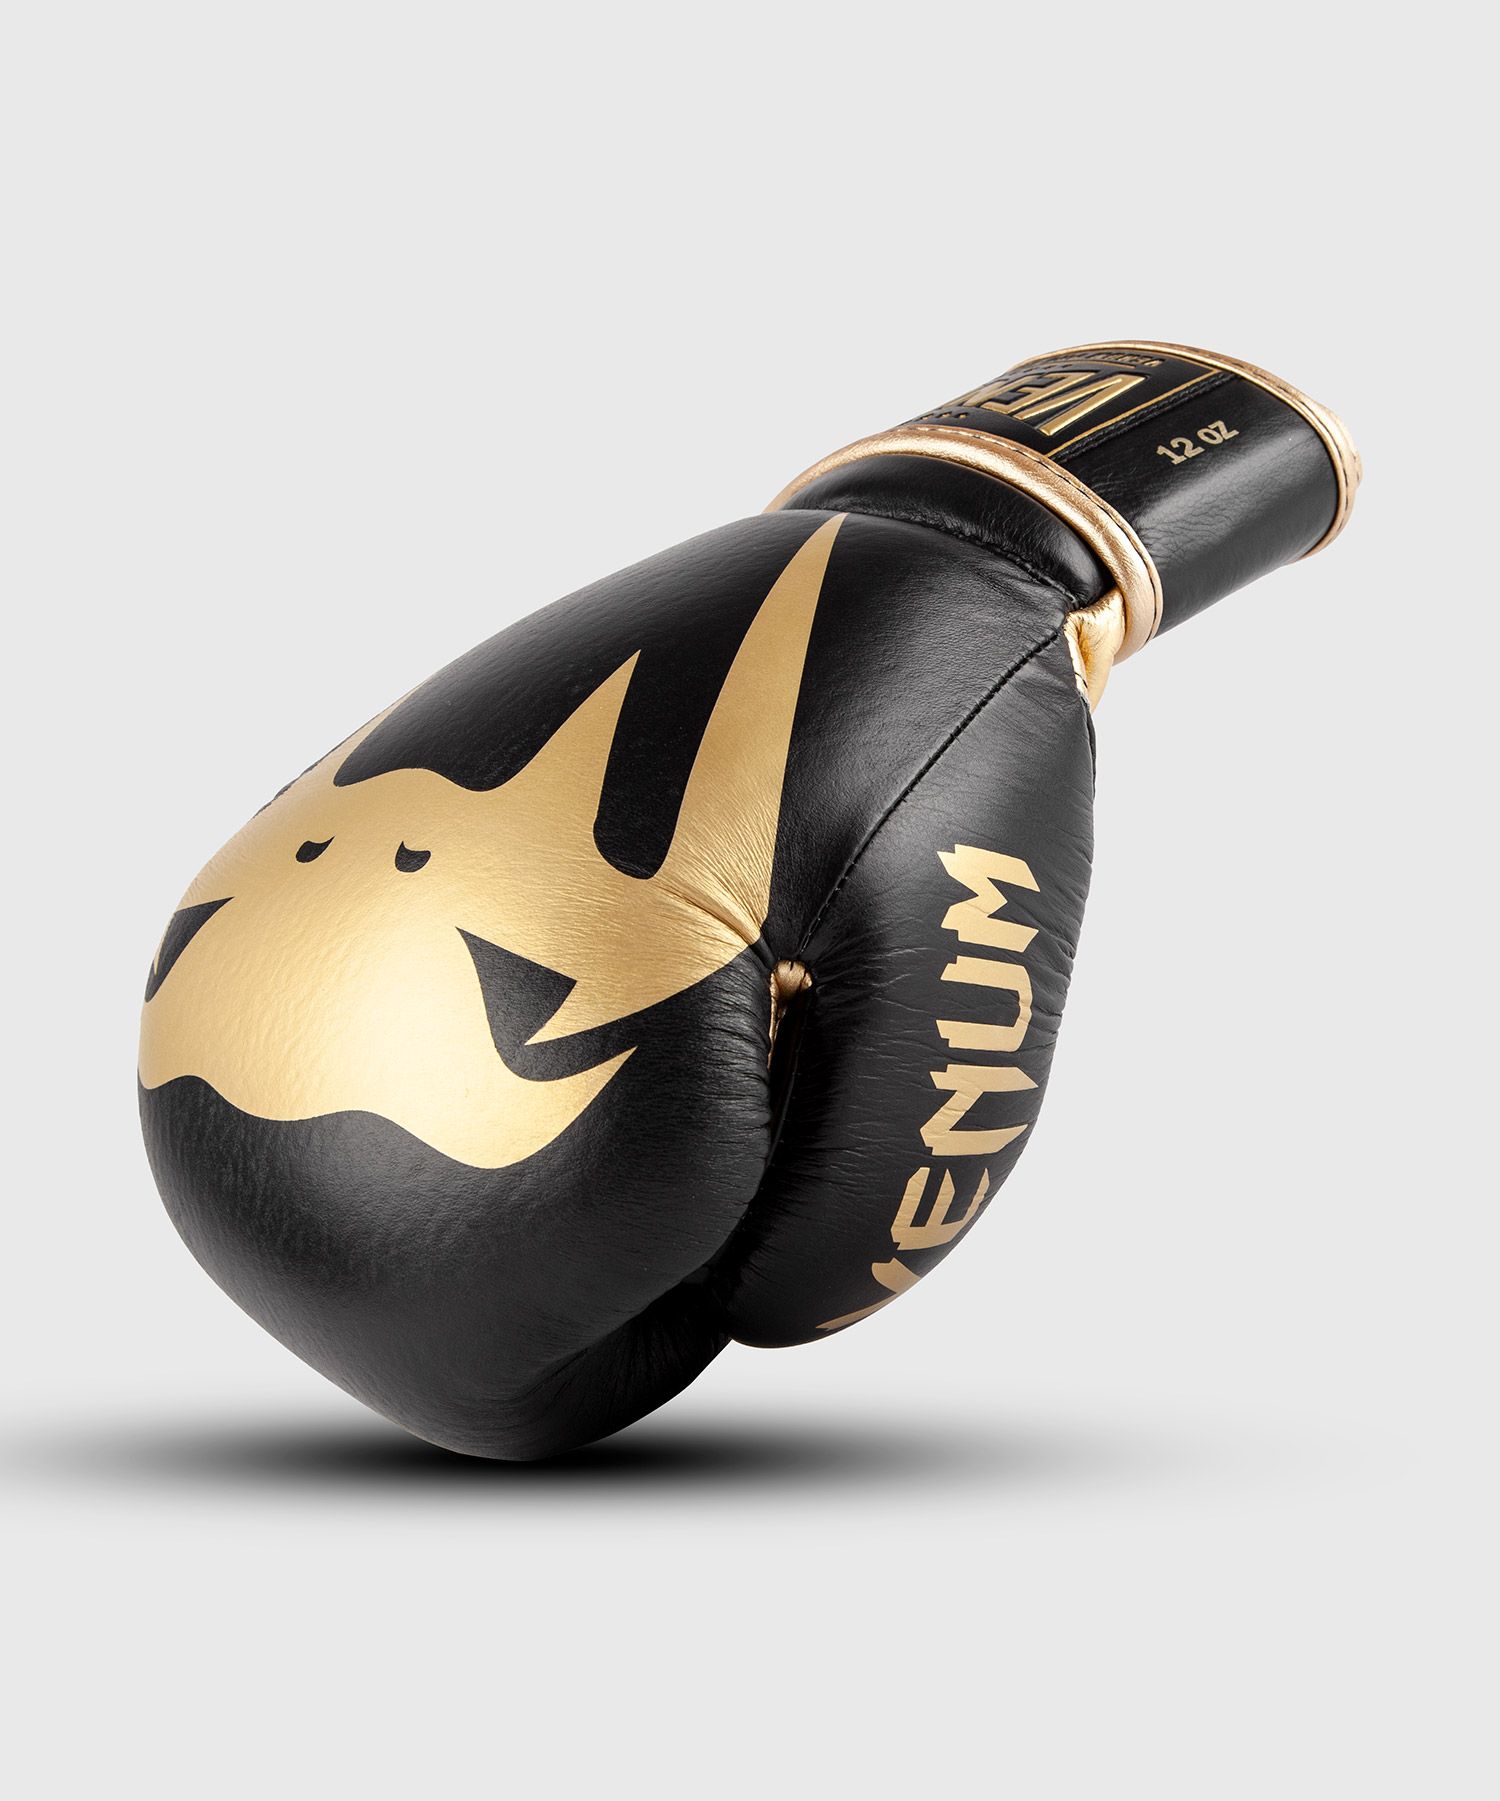 Venum Giant 2.0 Pro bokshandschoenen klittenband - Zwart/Goud